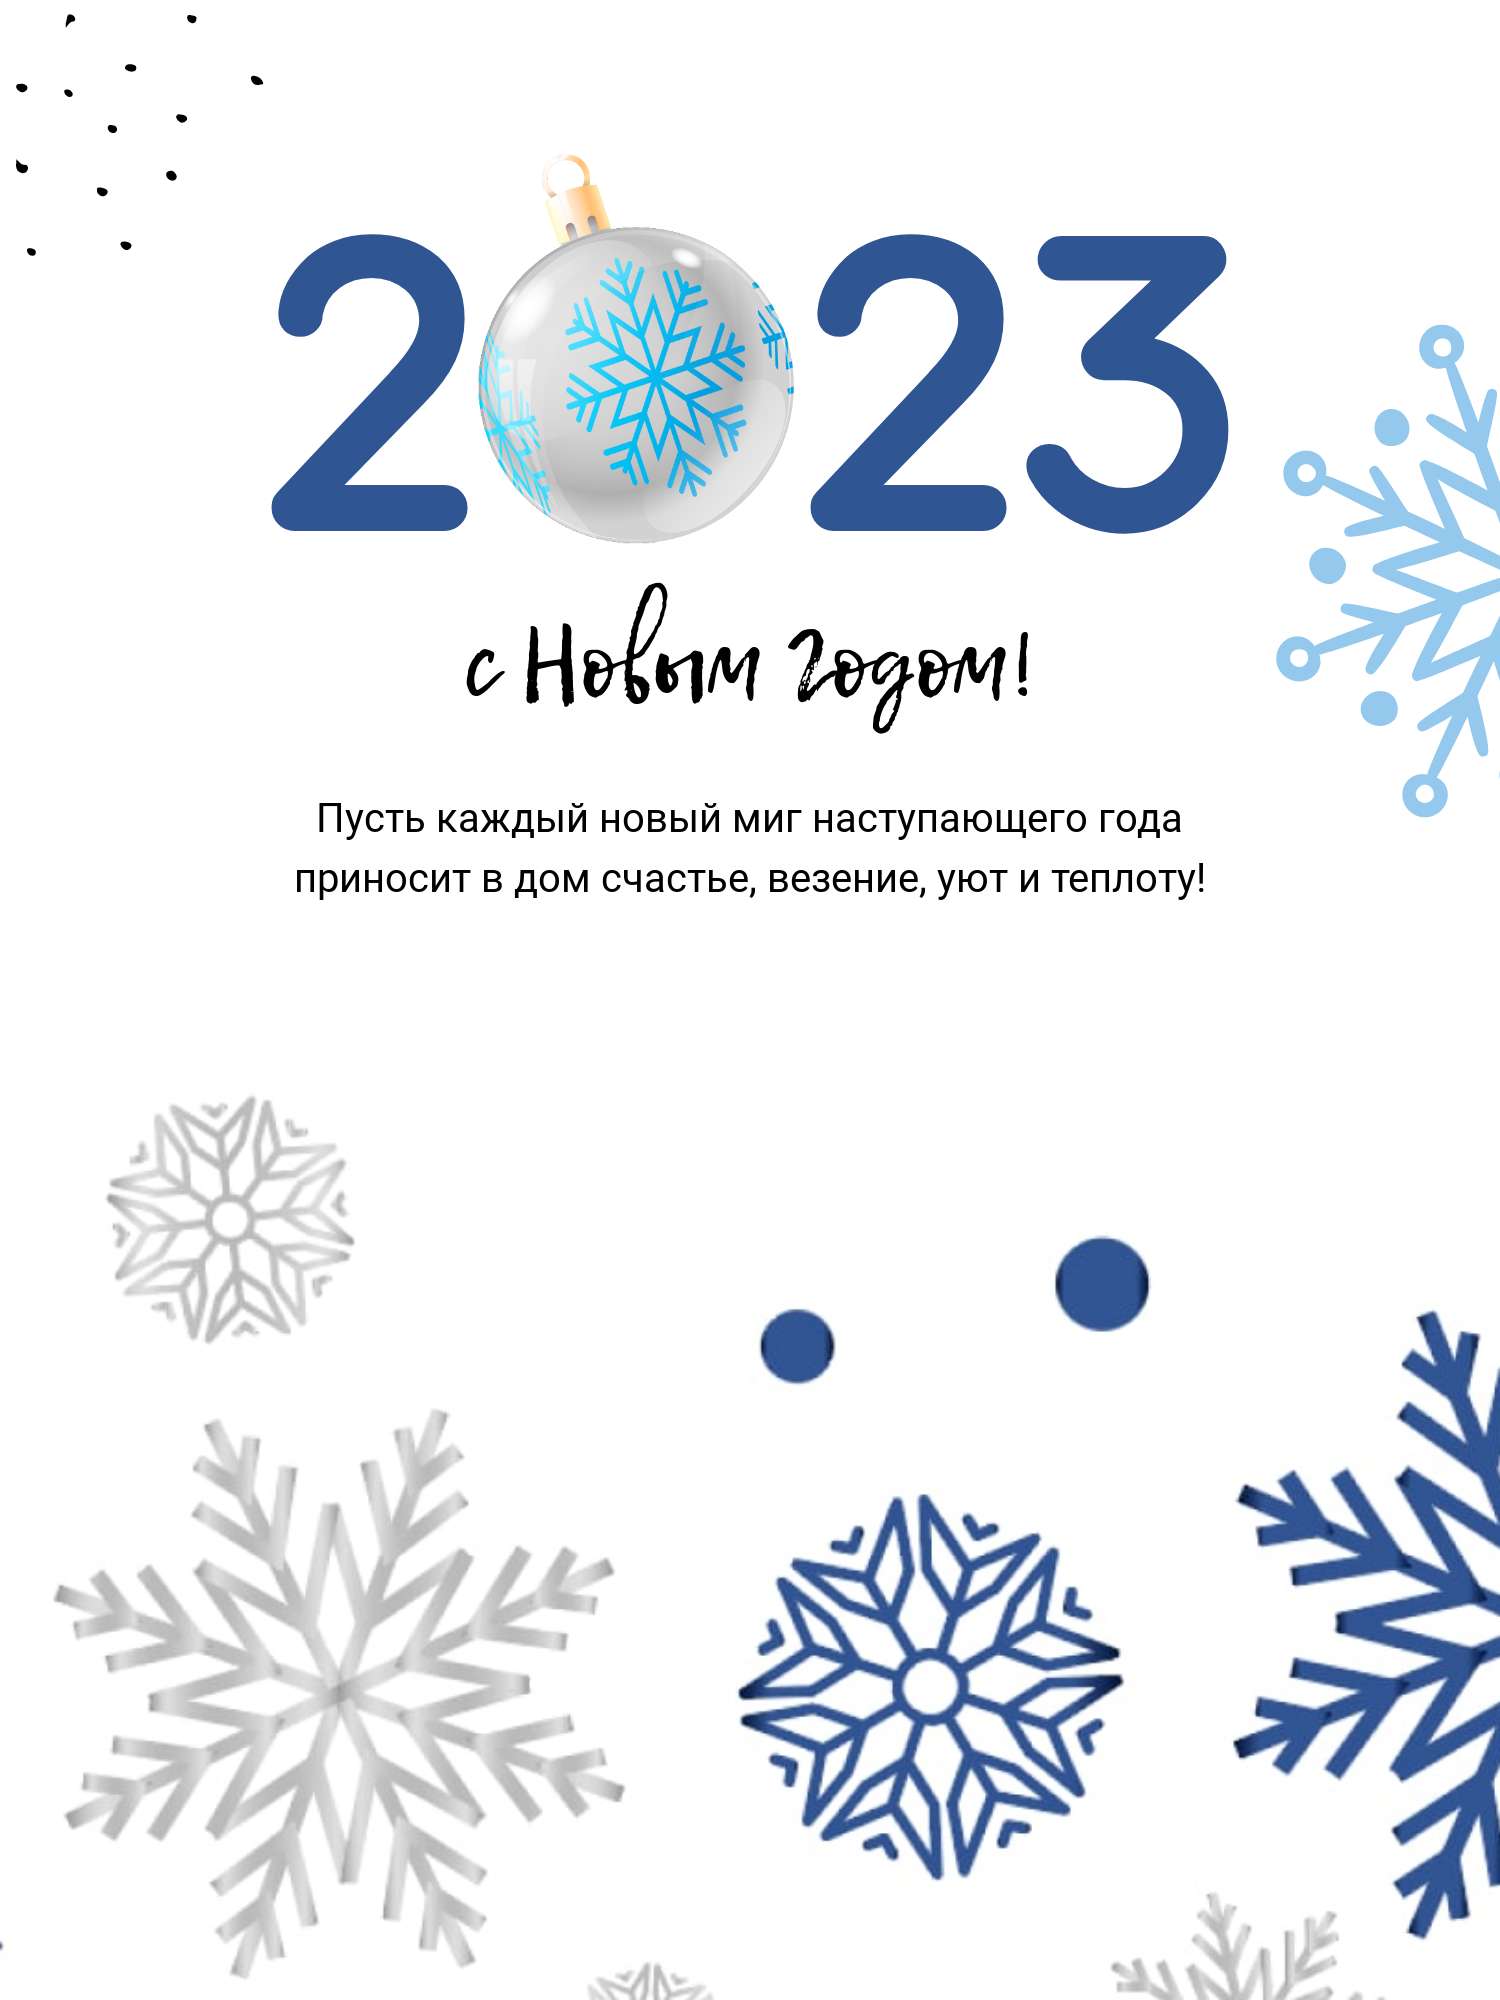 Зимний пост поздравление с Новым годом 2023 в белых и темно-синих оттенках со снежинками и елочными игрушками